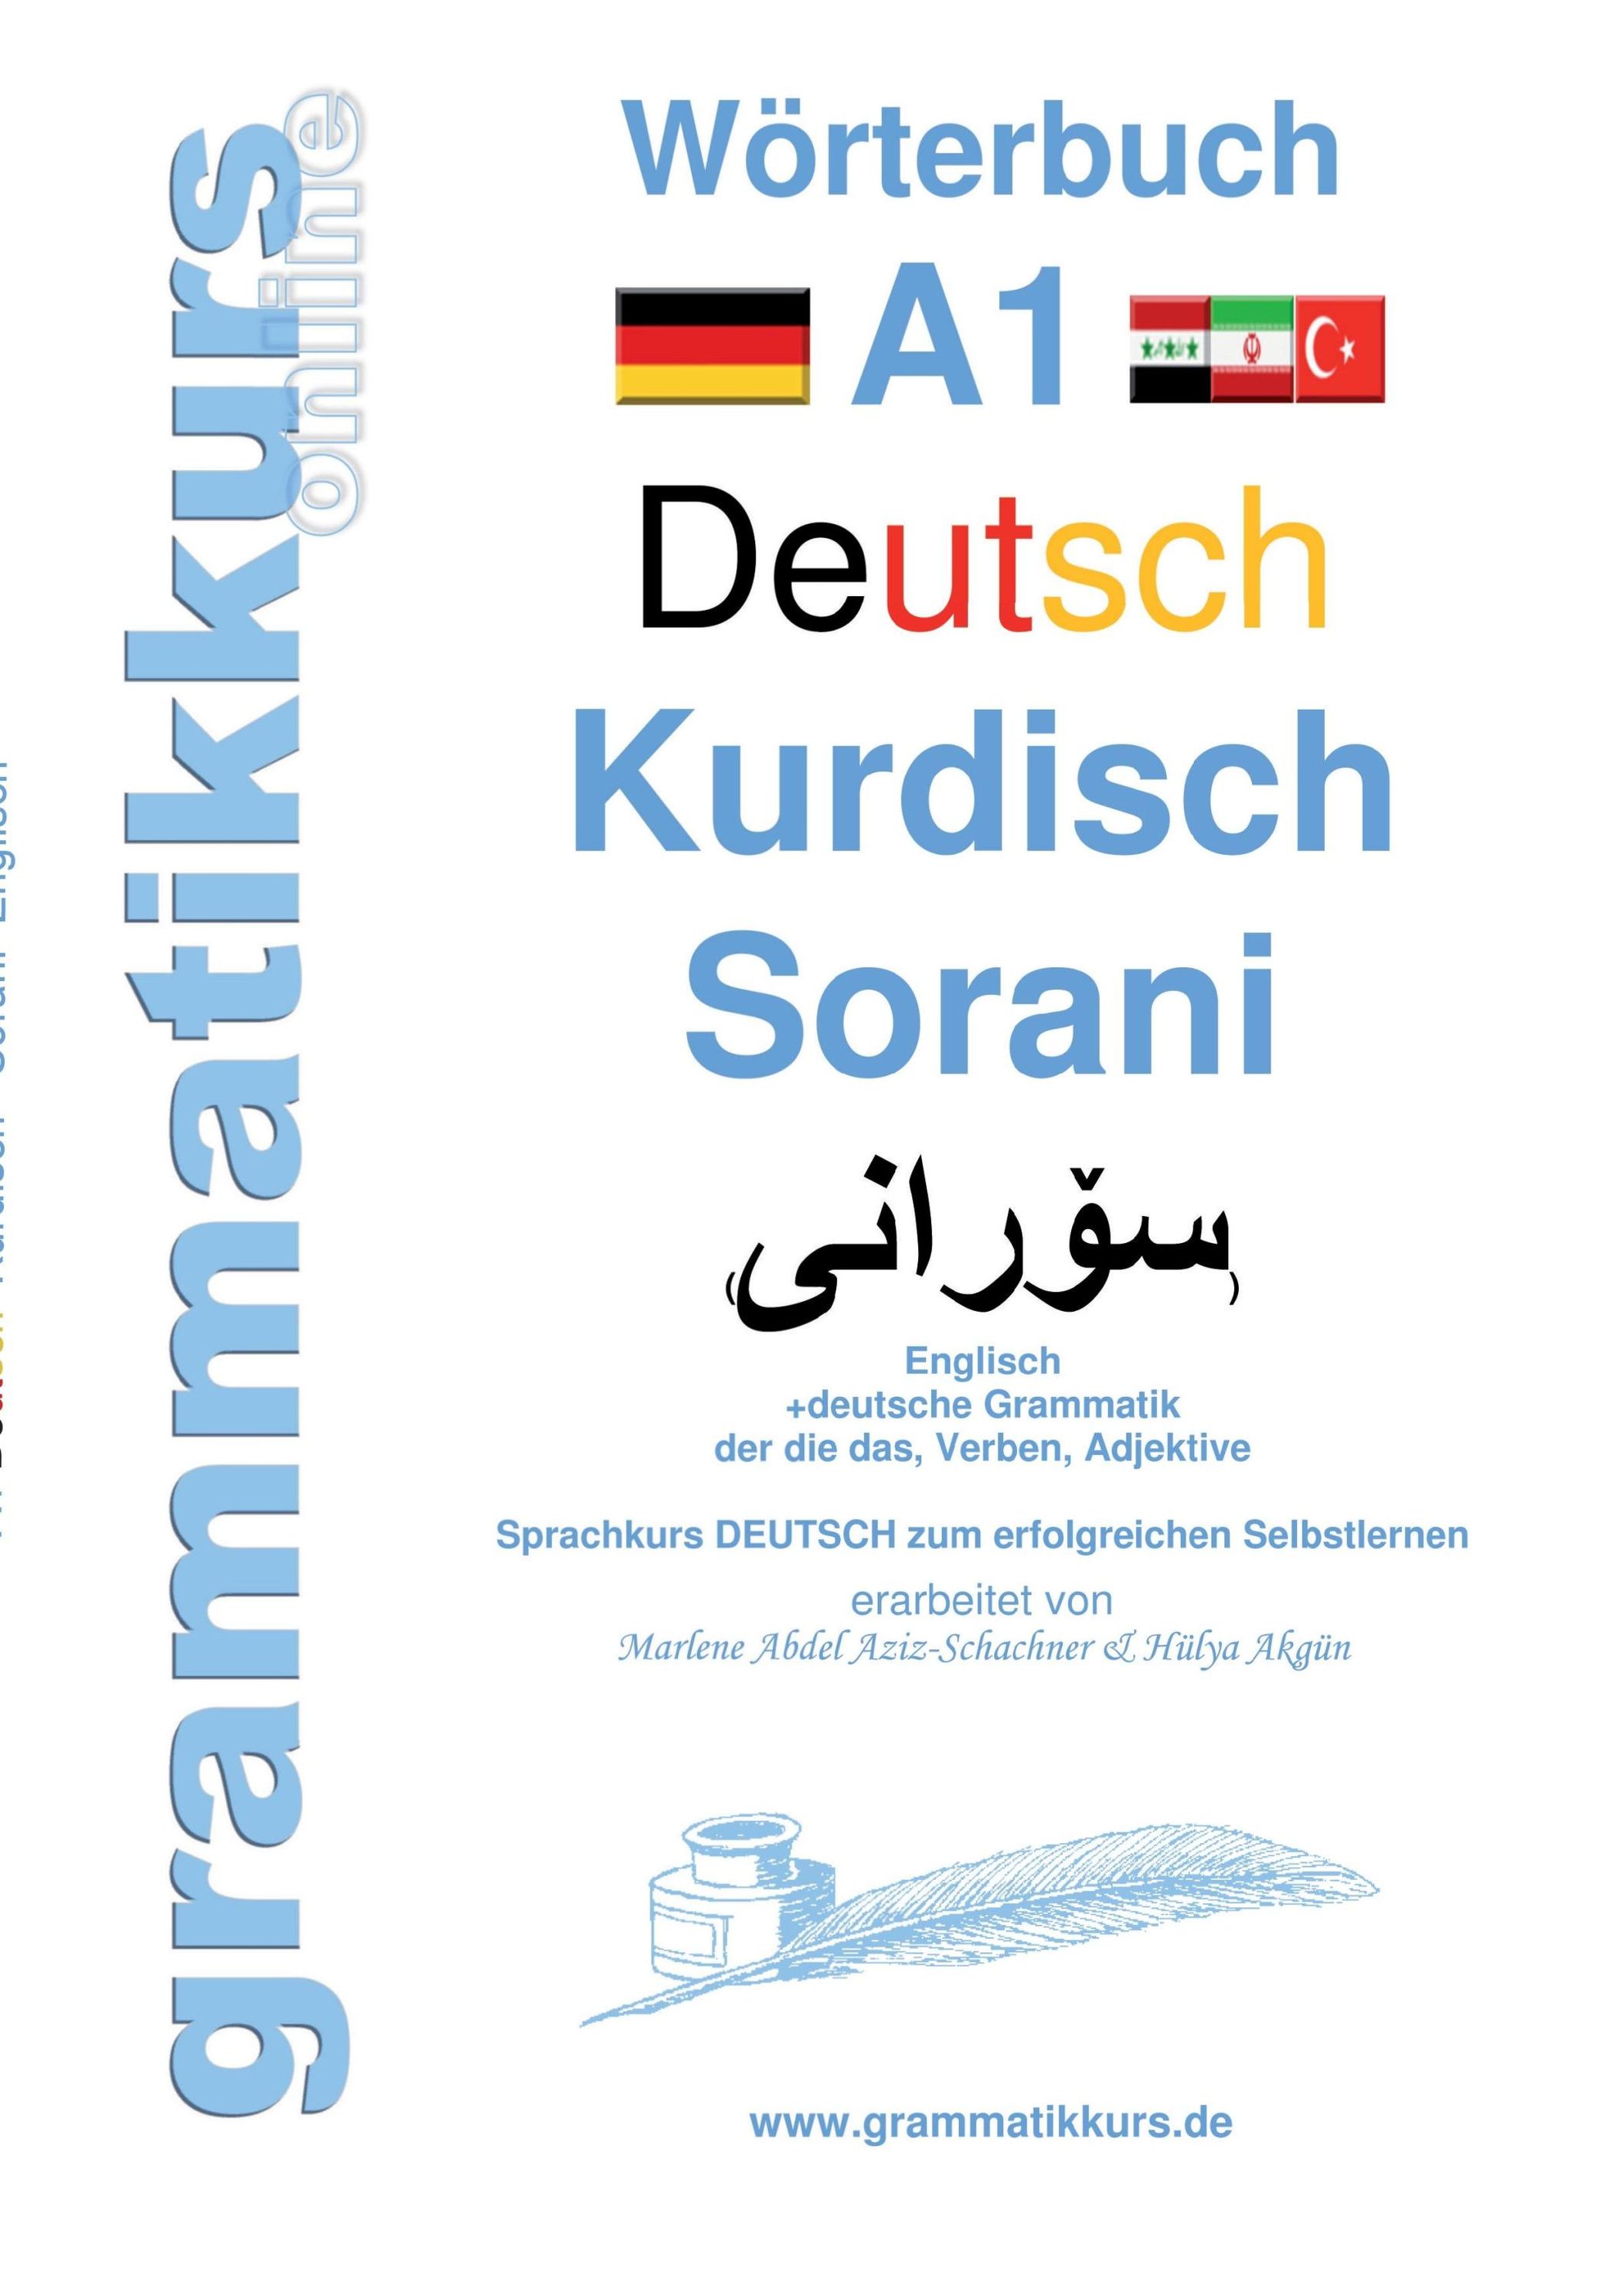 Wörterbuch A1 Deutsch Kurdisch Sorani Buch versandkostenfrei - Weltbild.de